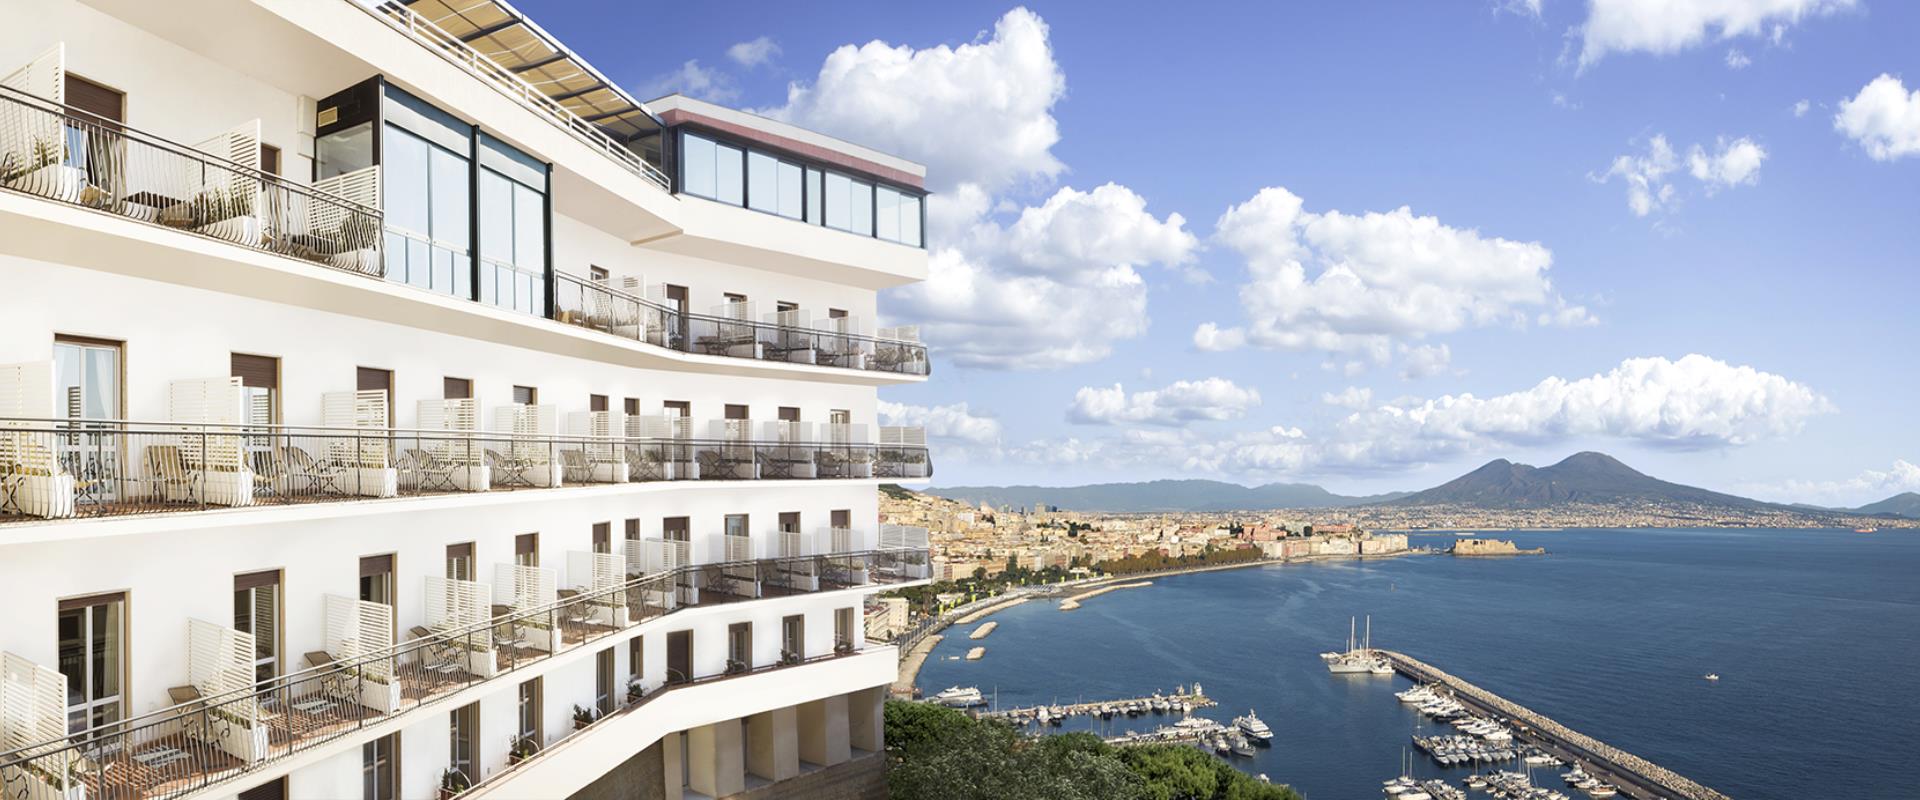 BW Signature Collection Hotel Paradiso Nápoles-hotel 4 estrellas en Posillipo con increíbles vistas de la bahía de Nápoles